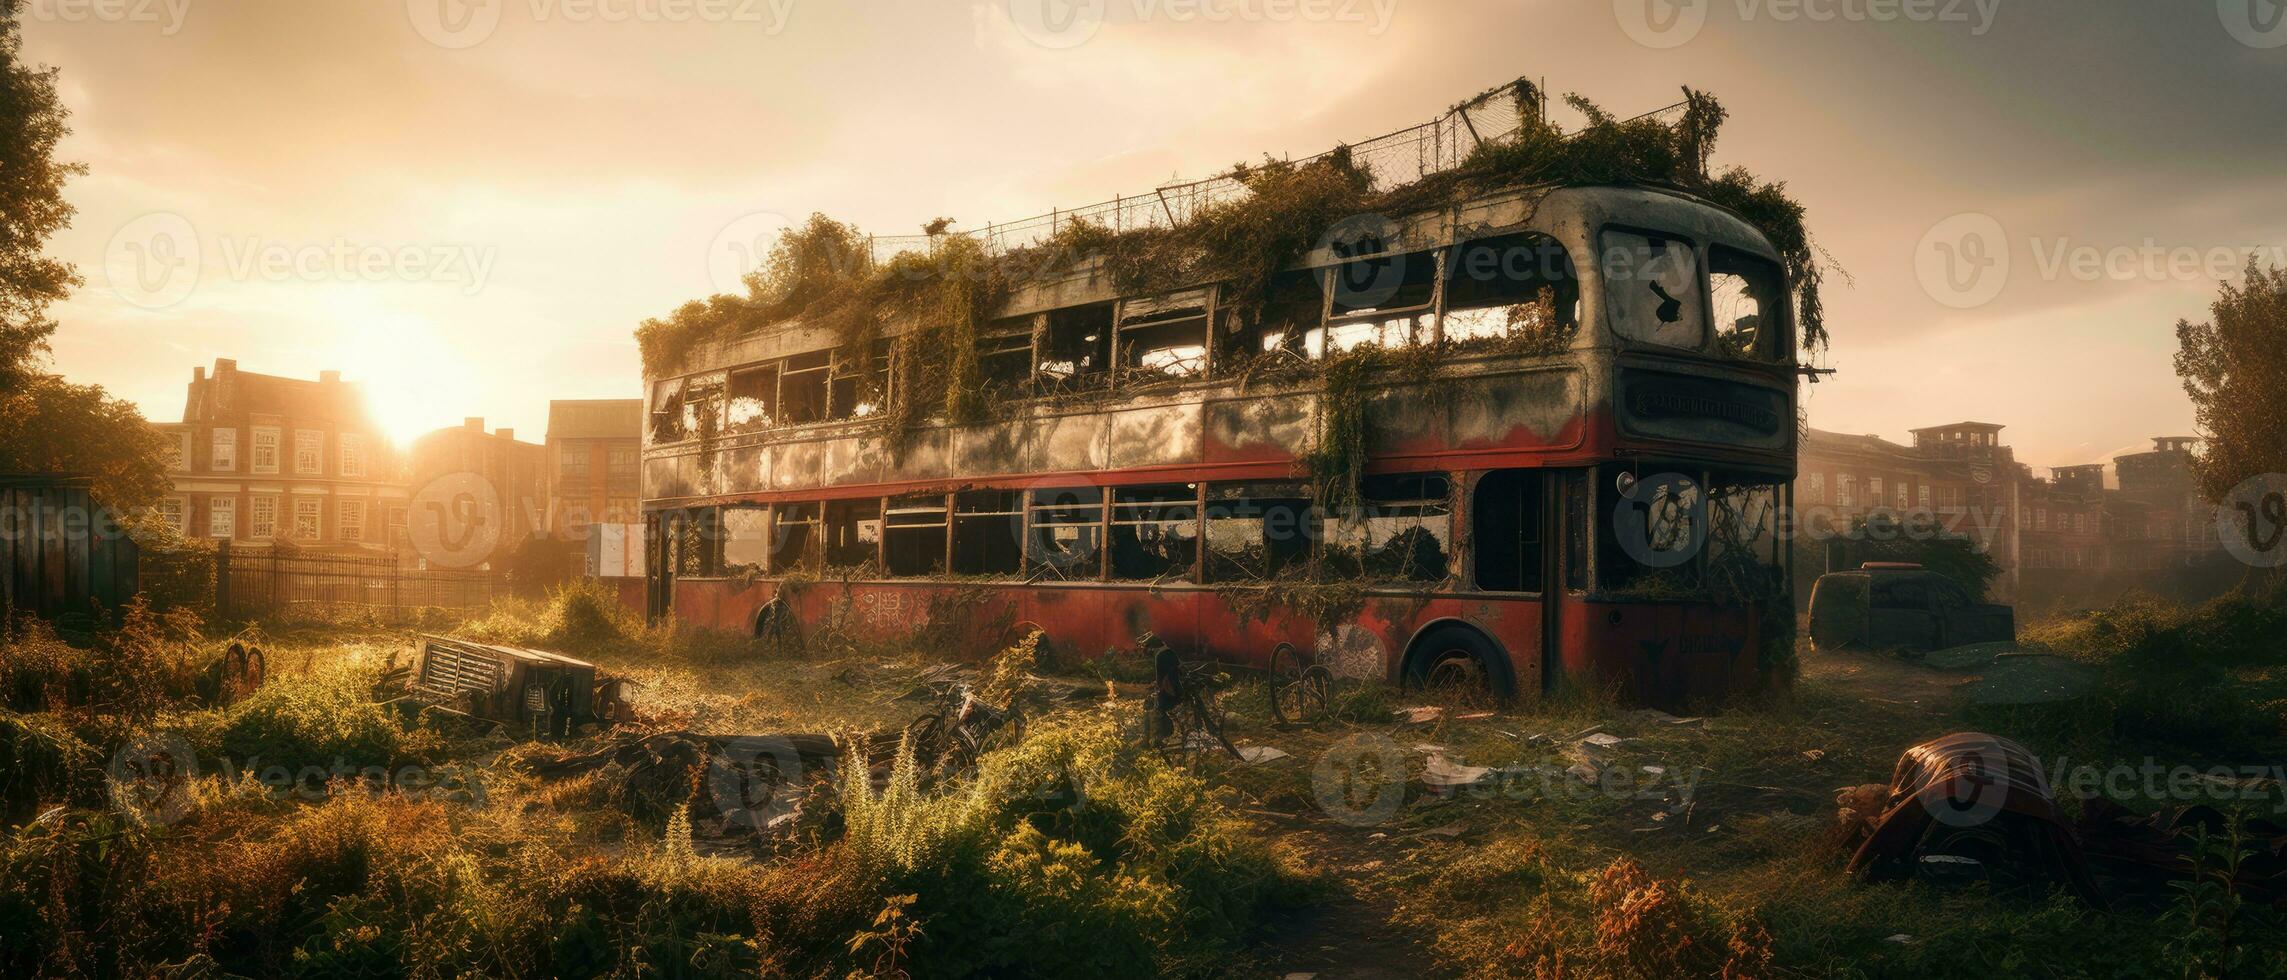 rot Bus doppelt Decker London Post Apokalypse Landschaft Spiel Hintergrund Foto Kunst Illustration Rost